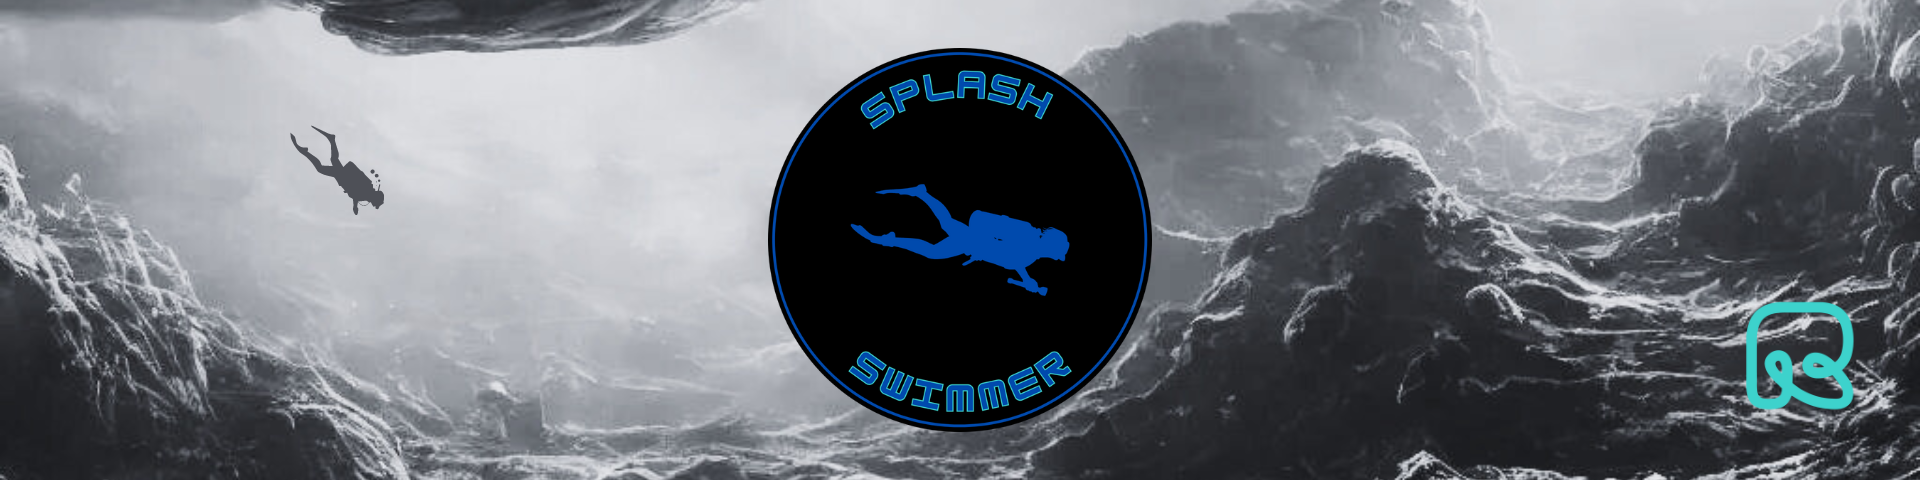 Splash Swimmer